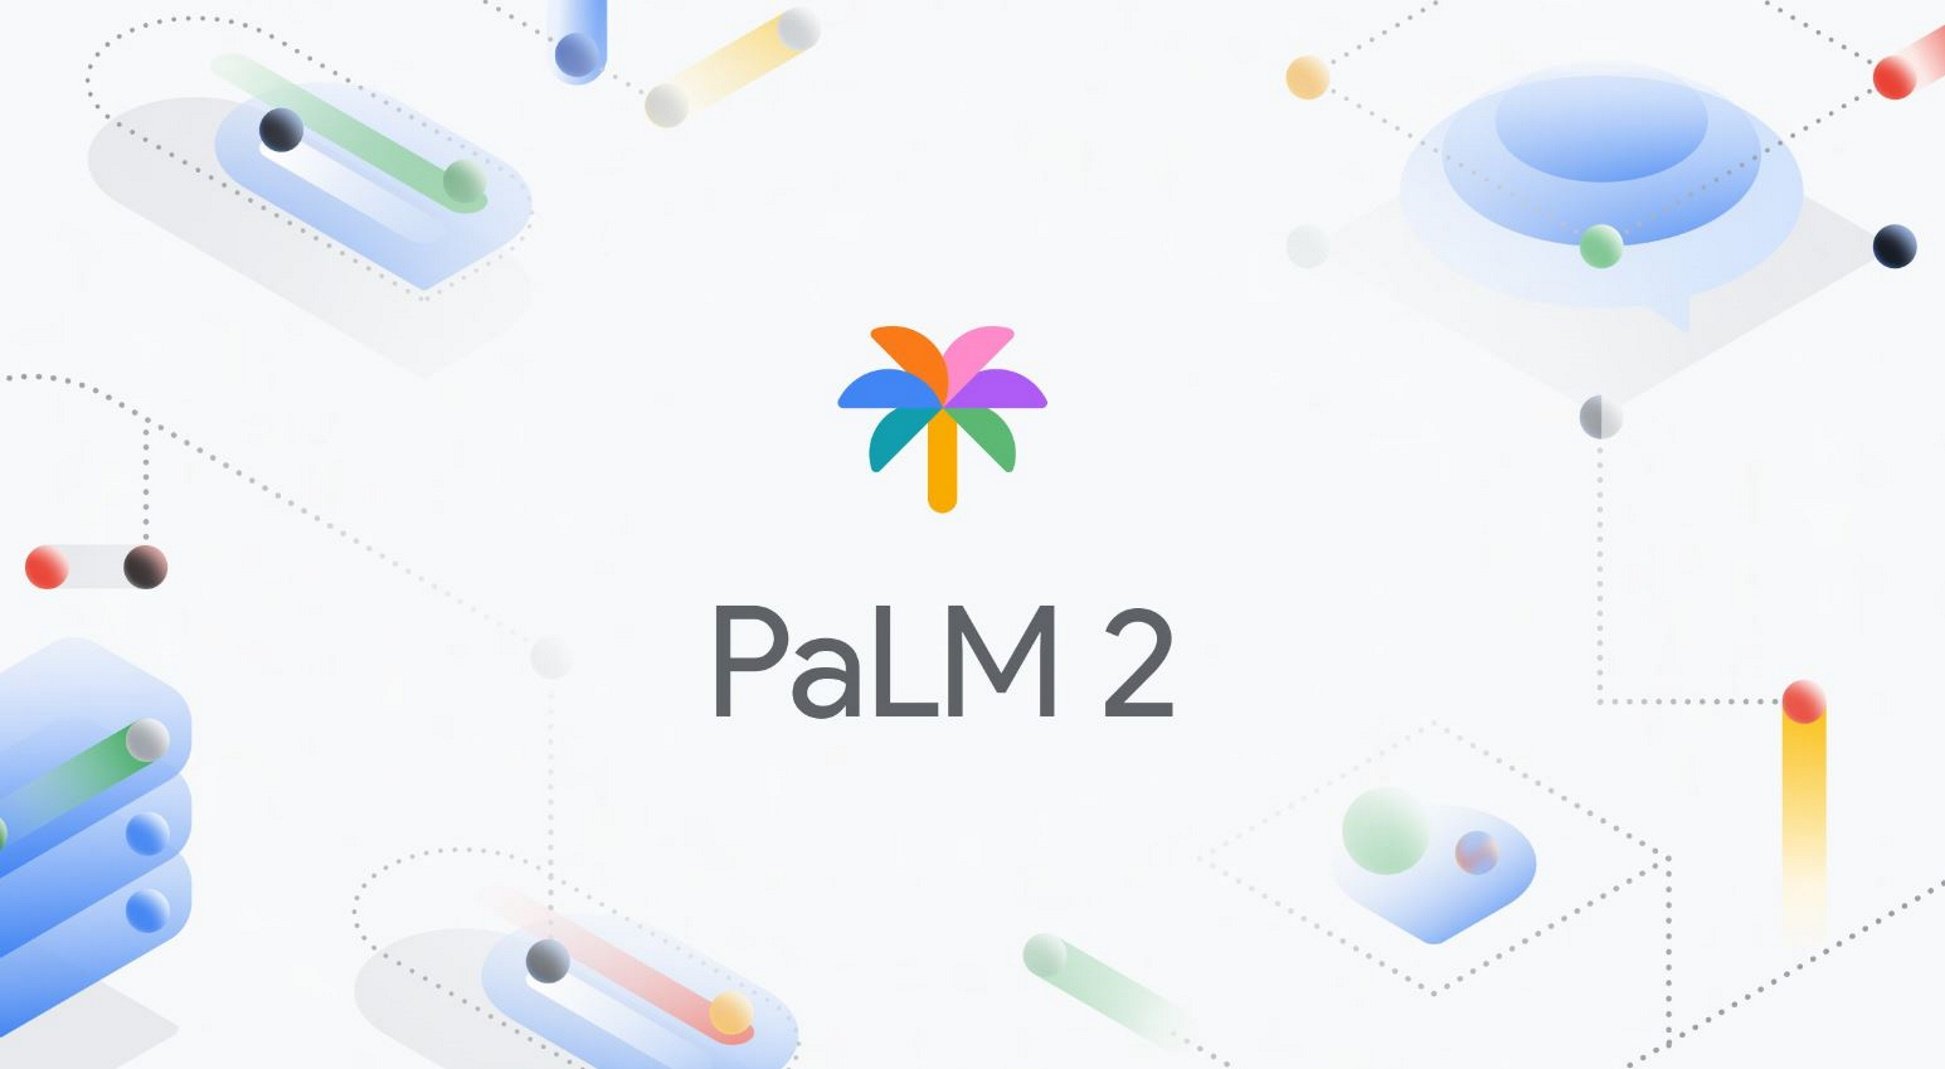 Google incorpora el catalán en su nueva inteligencia artificial PaLM2